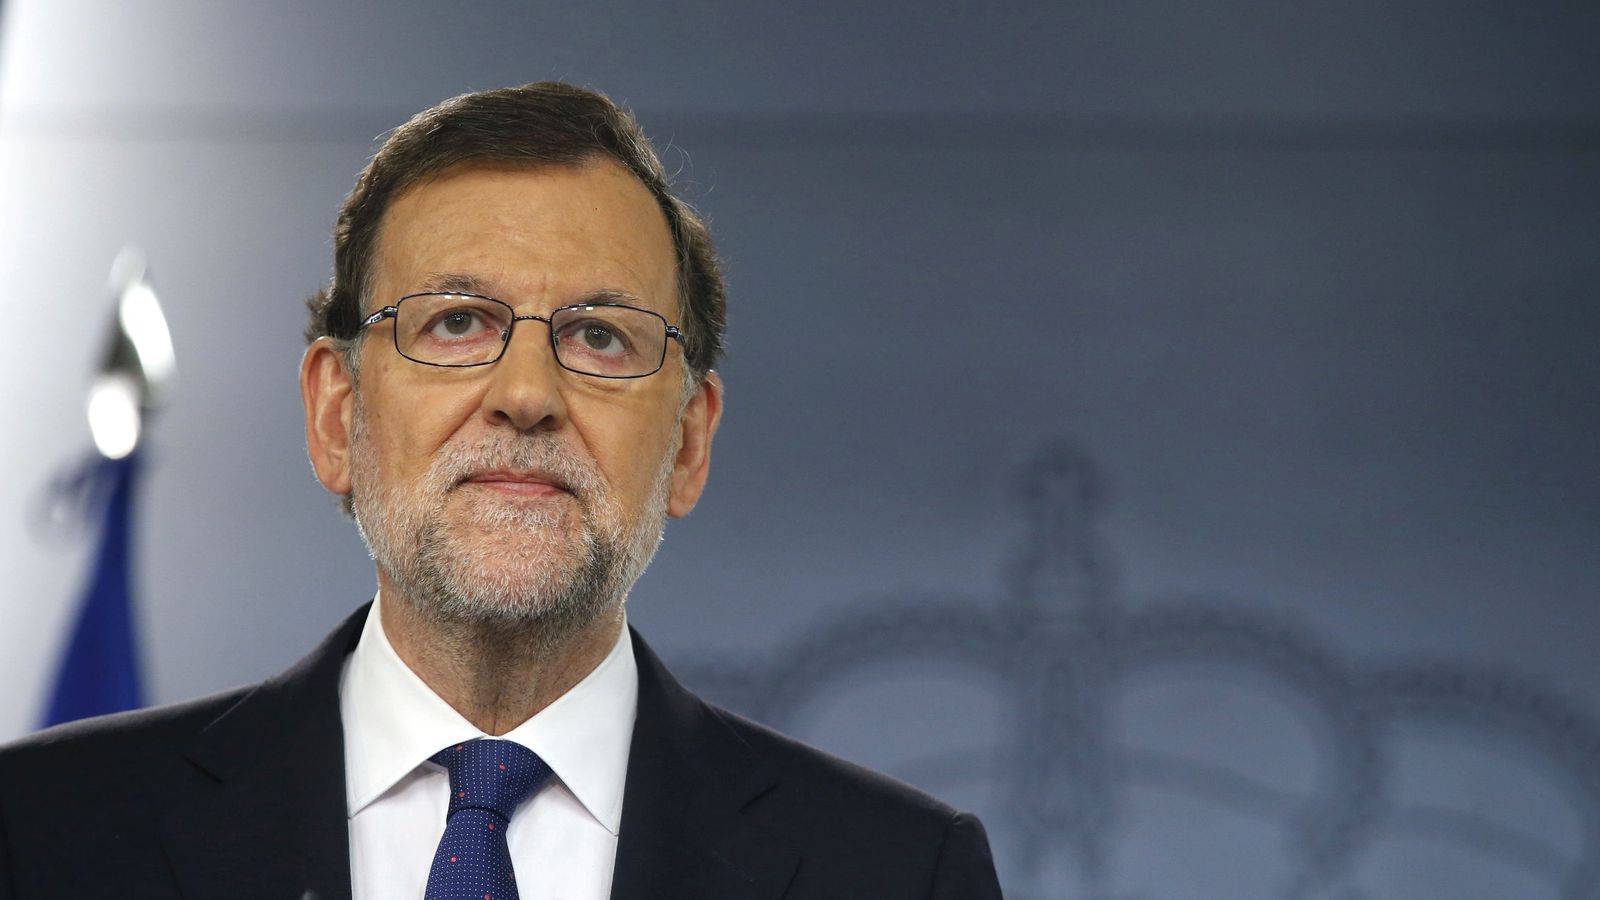 Foto: El presidente del Gobierno en funciones, Mariano Rajoy, comparece en la Moncloa tras el triunfo del Brexit. (EFE)